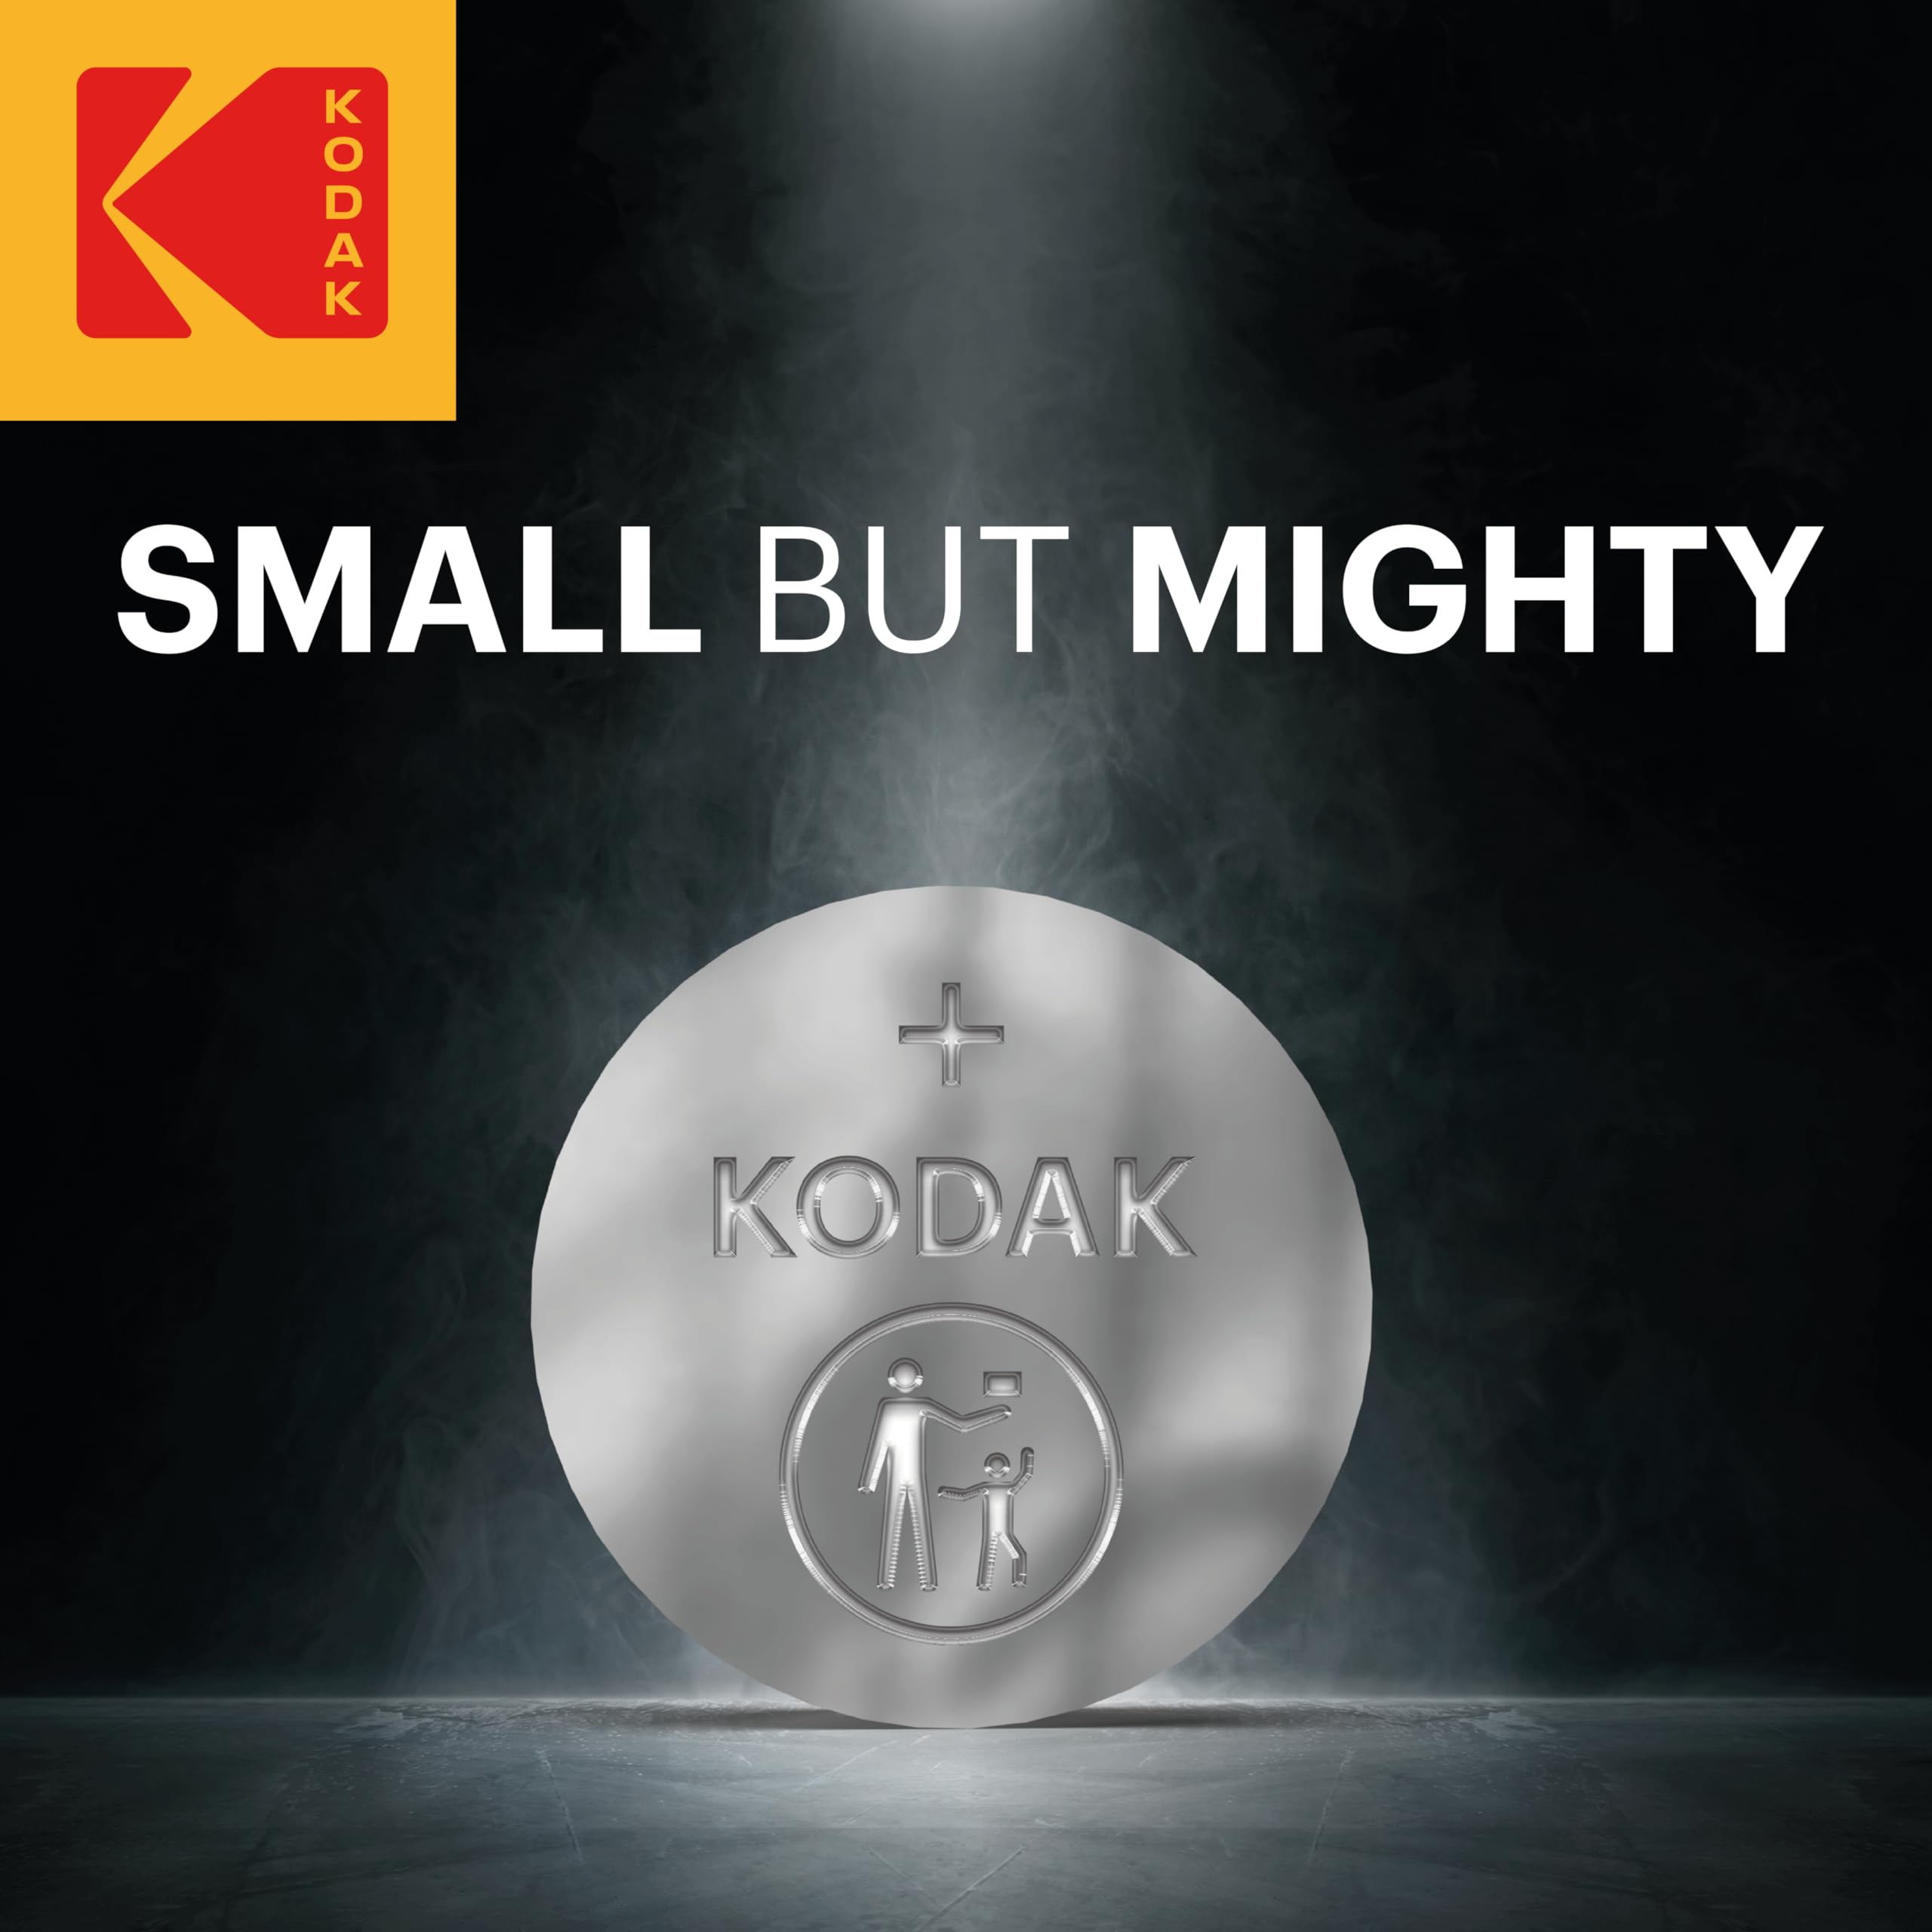 Kodak   CR2025 Batteries   Lithium 3V Coin   Button Cell for Car Keys   20 Pack